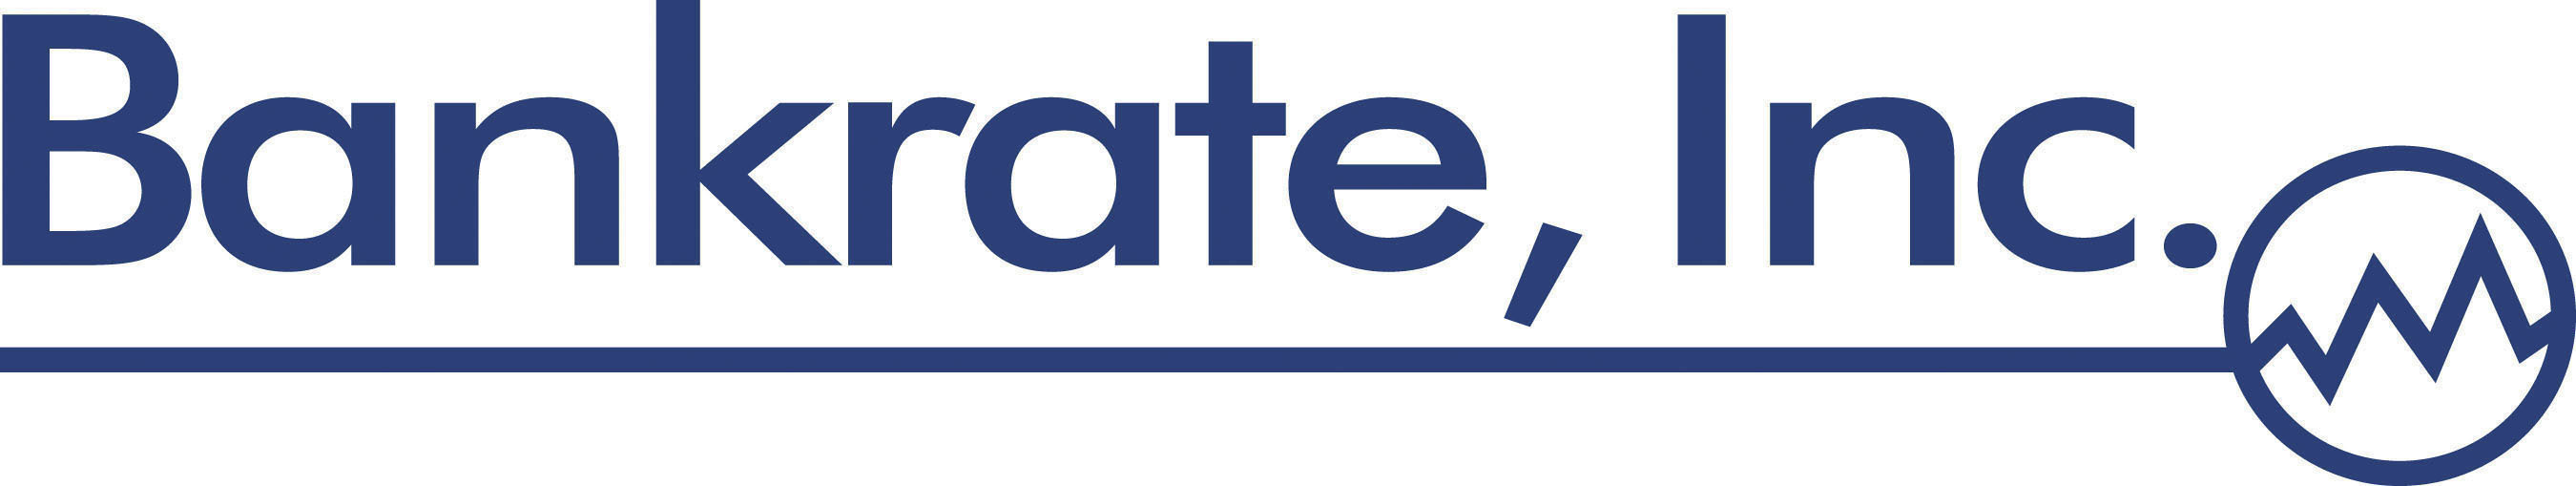 Bankrate, Inc. logo